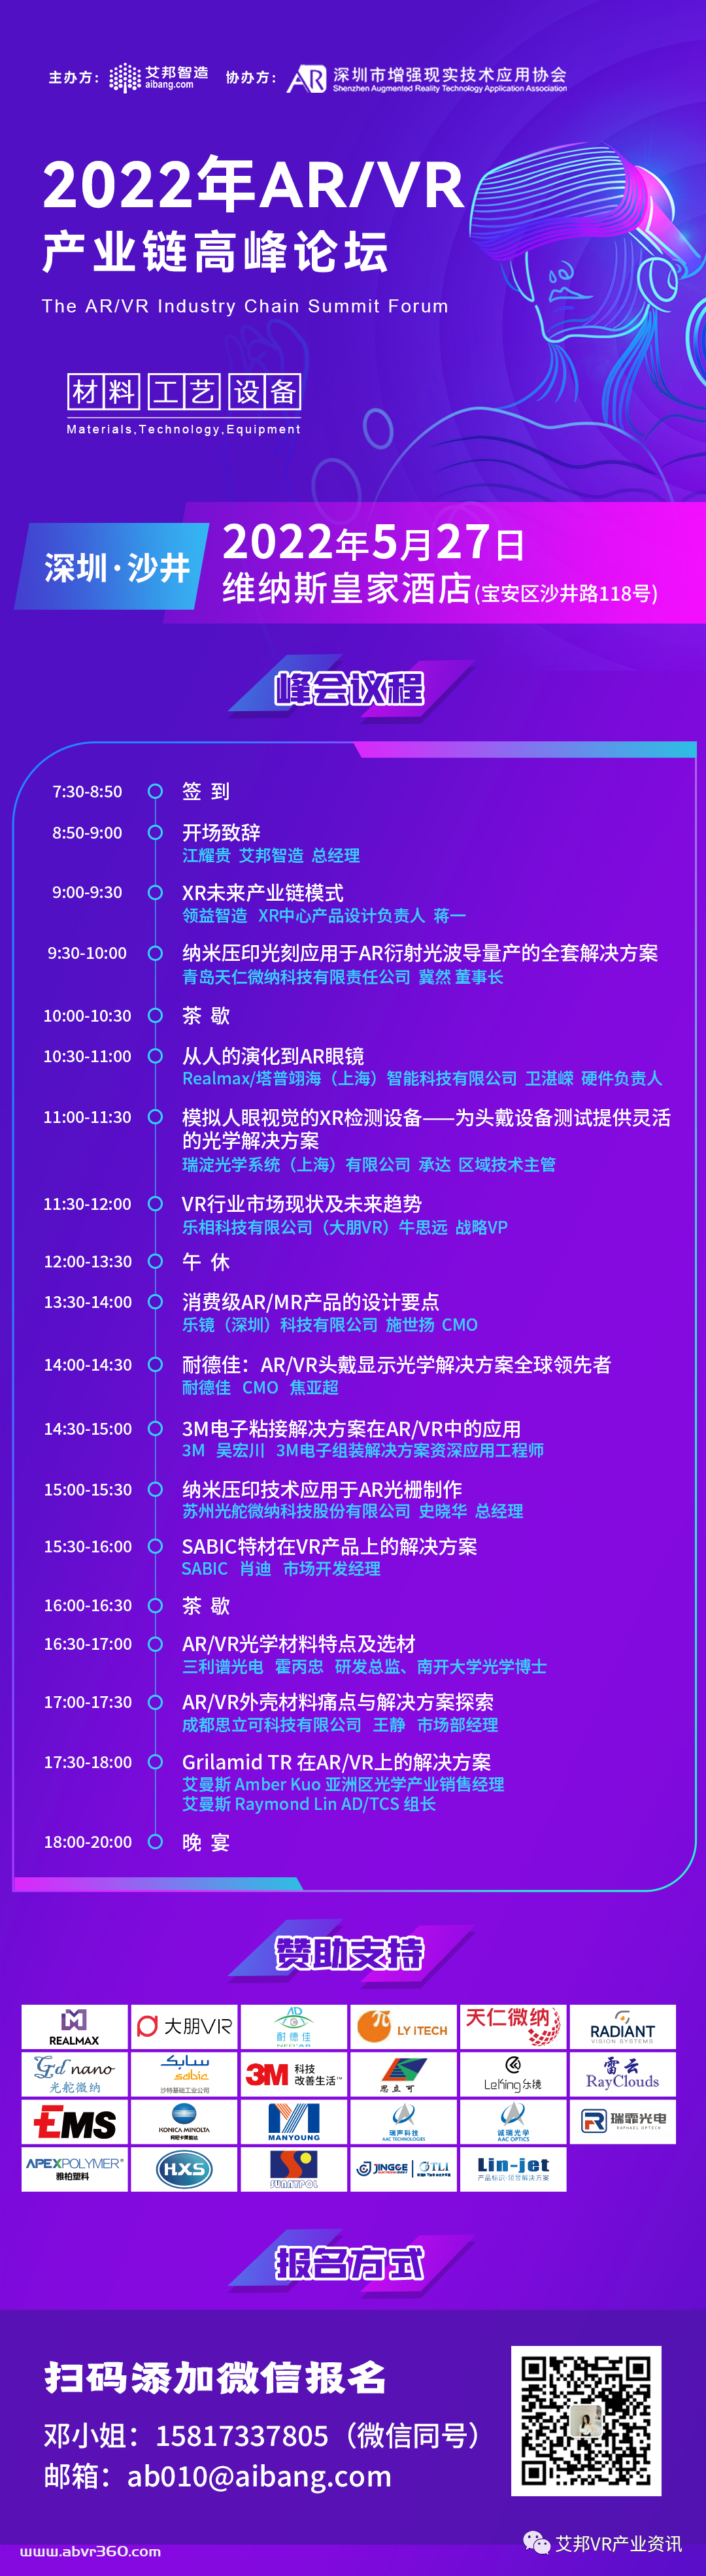 艾曼斯将参与5月27日深圳AR/VR高峰论坛